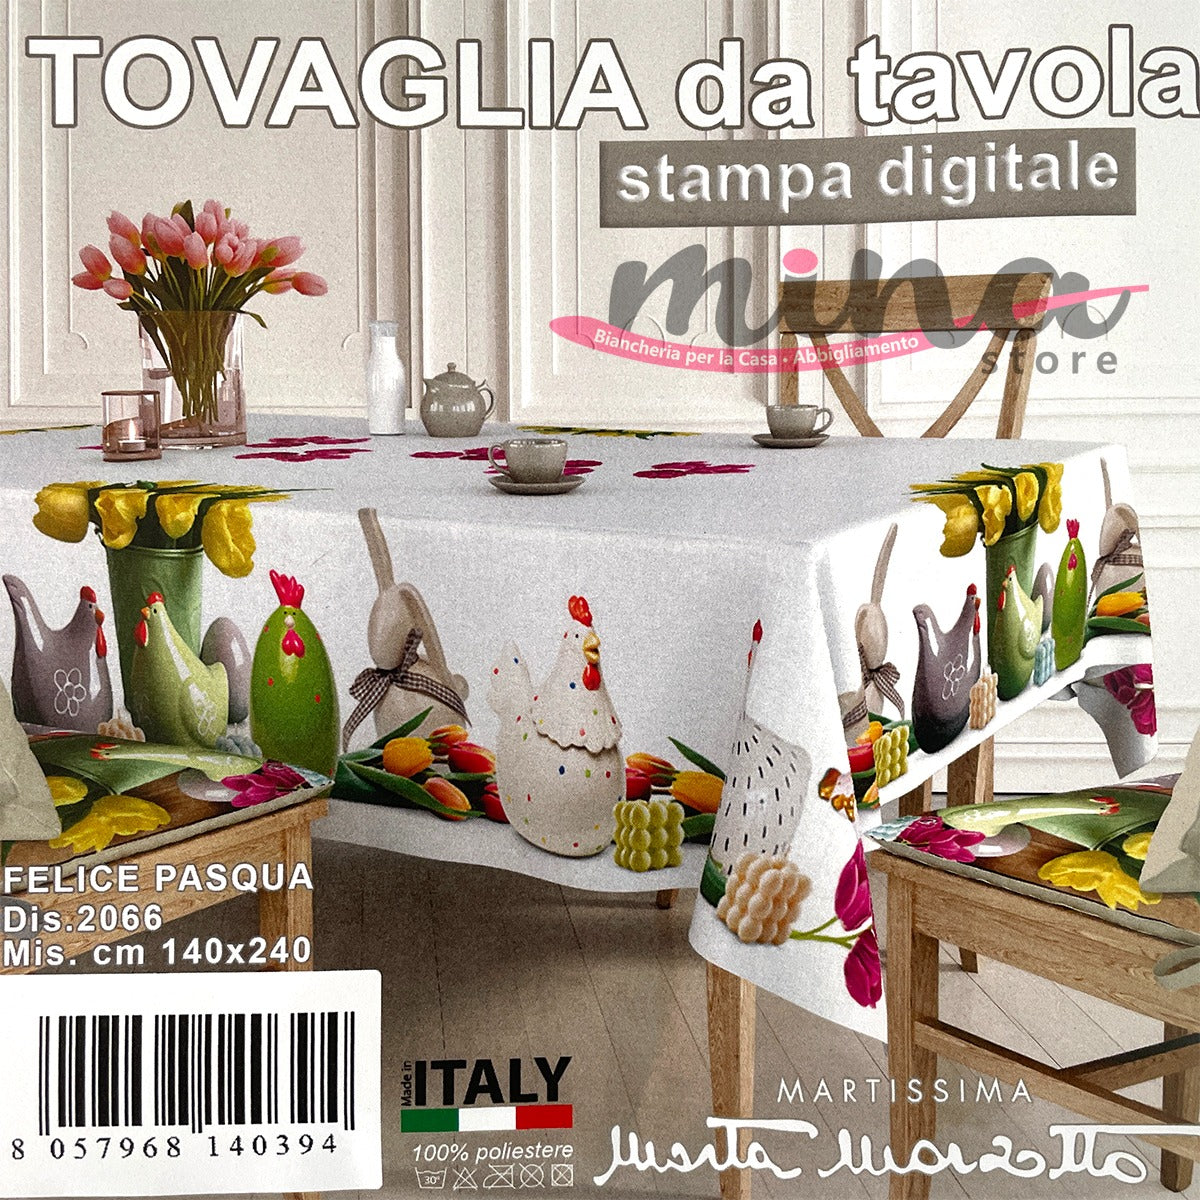 Tovaglia x6 e x12 disegno FELICE PASQUA - Marta Marzotto, Made in Italy , tovaglia, copritavolo 0585-0586